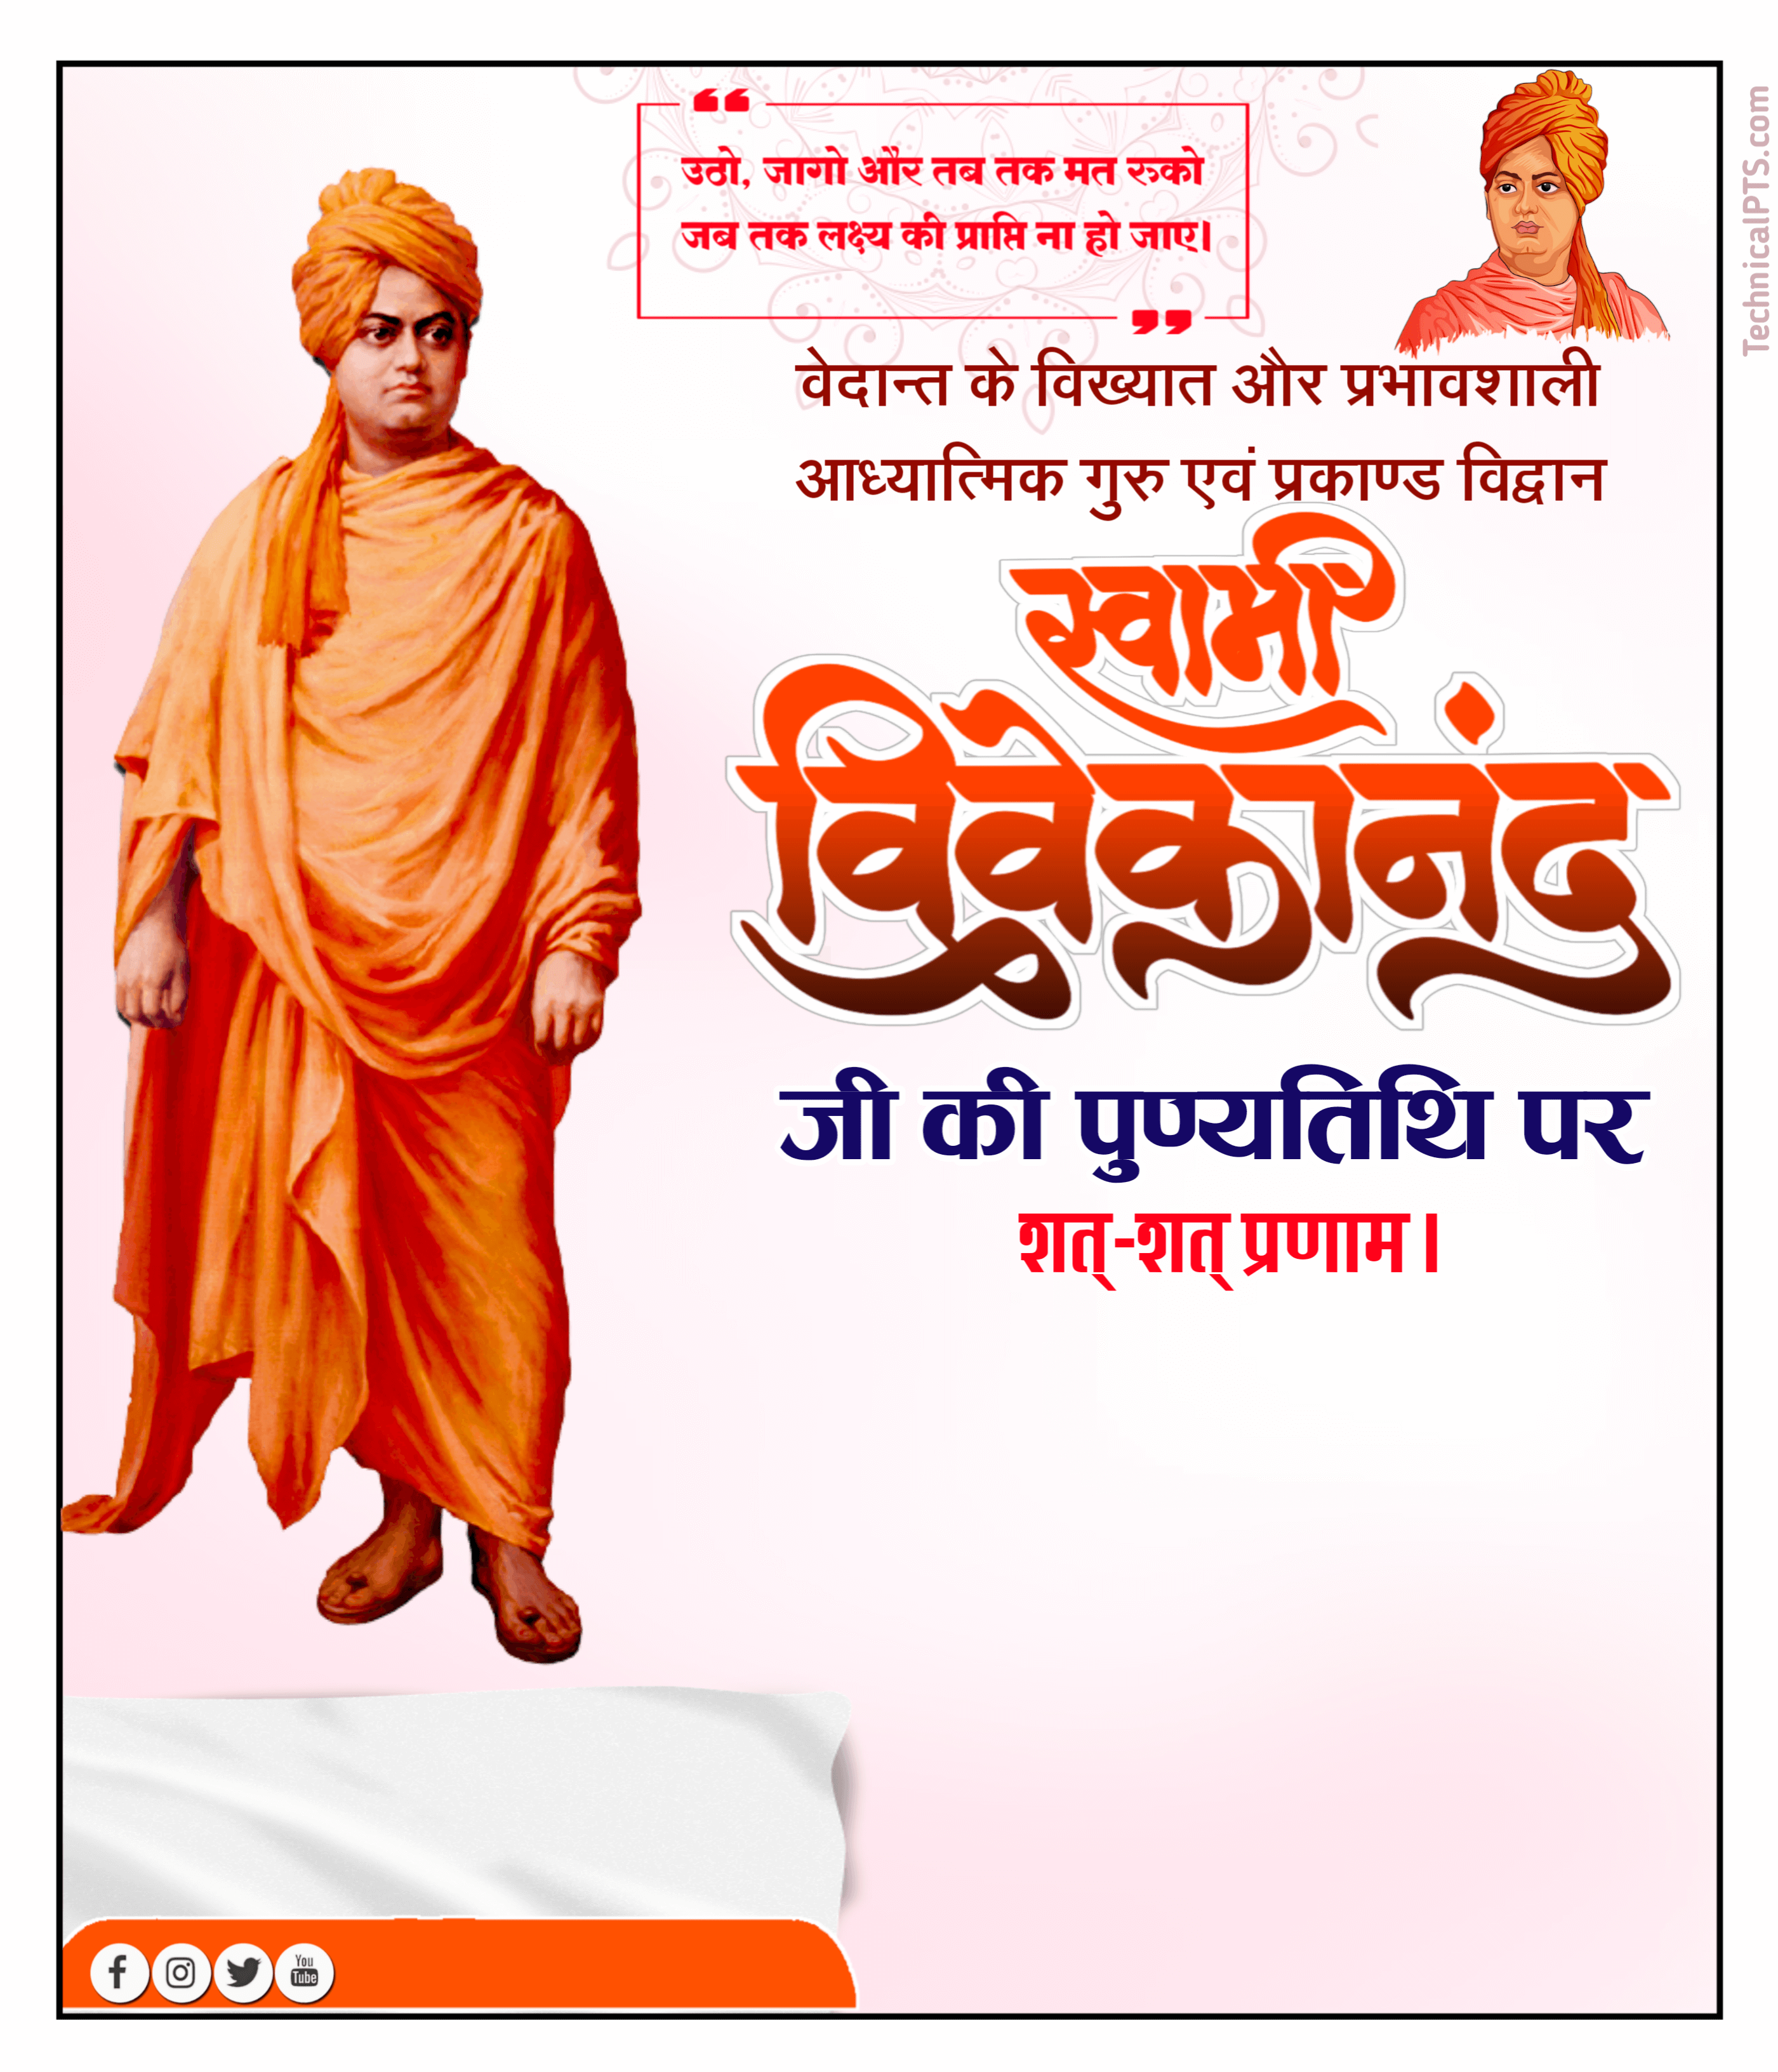 Swami Vivekanand Punyatithi Banner editing| Swami Vivekanand Punyatithi ka banner Kaise banaa